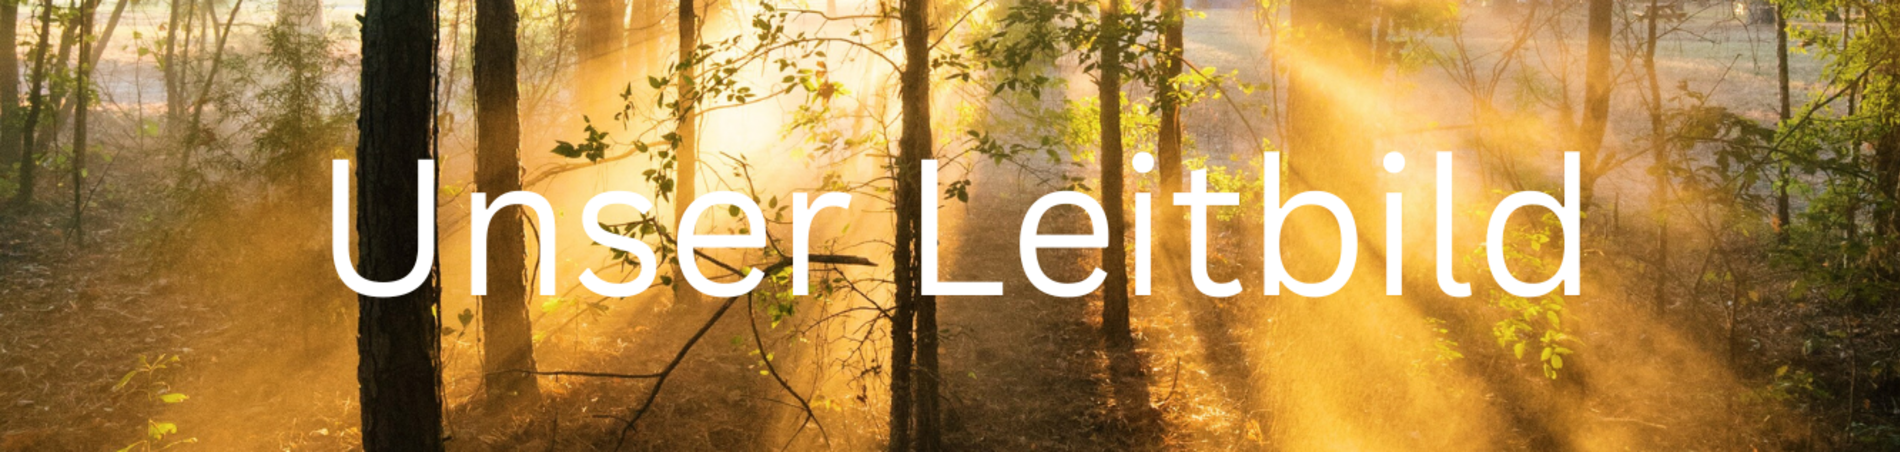 Sonnenstrahlen durchleuchten Wald, Aufschrift: Unser Leitbild